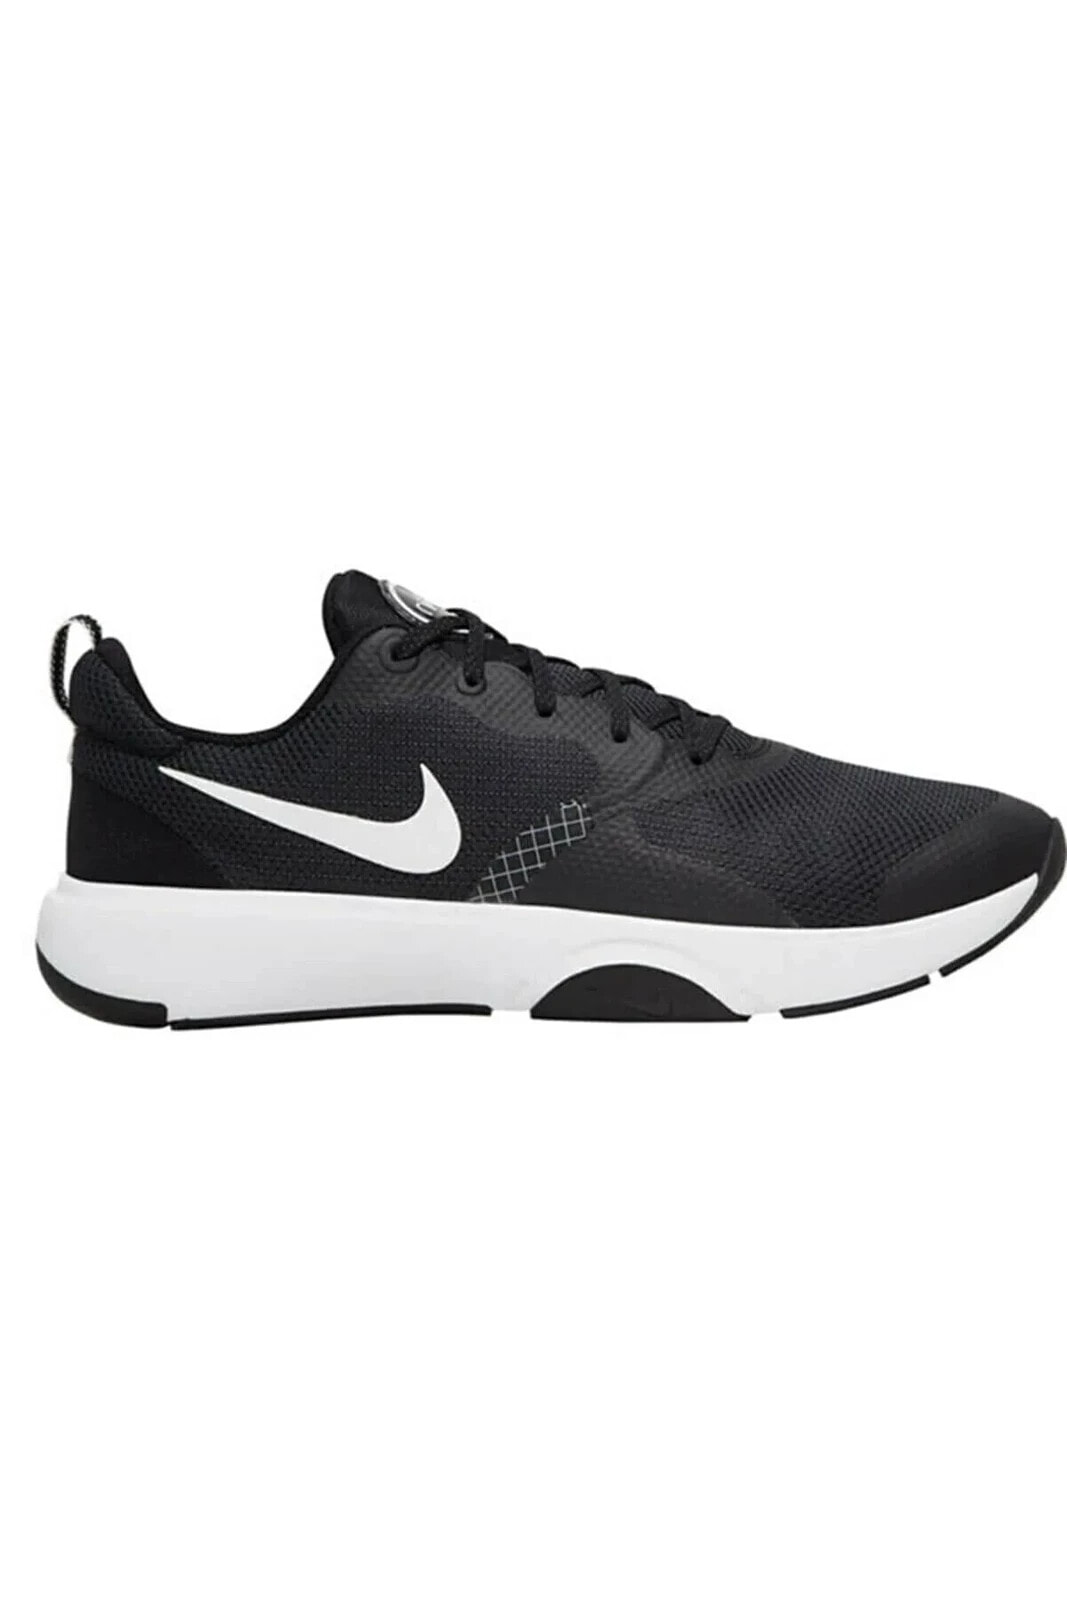 City Rep Tr Erkek Yürüyüş Koşu Ayakkabı Da1352-002-siyah